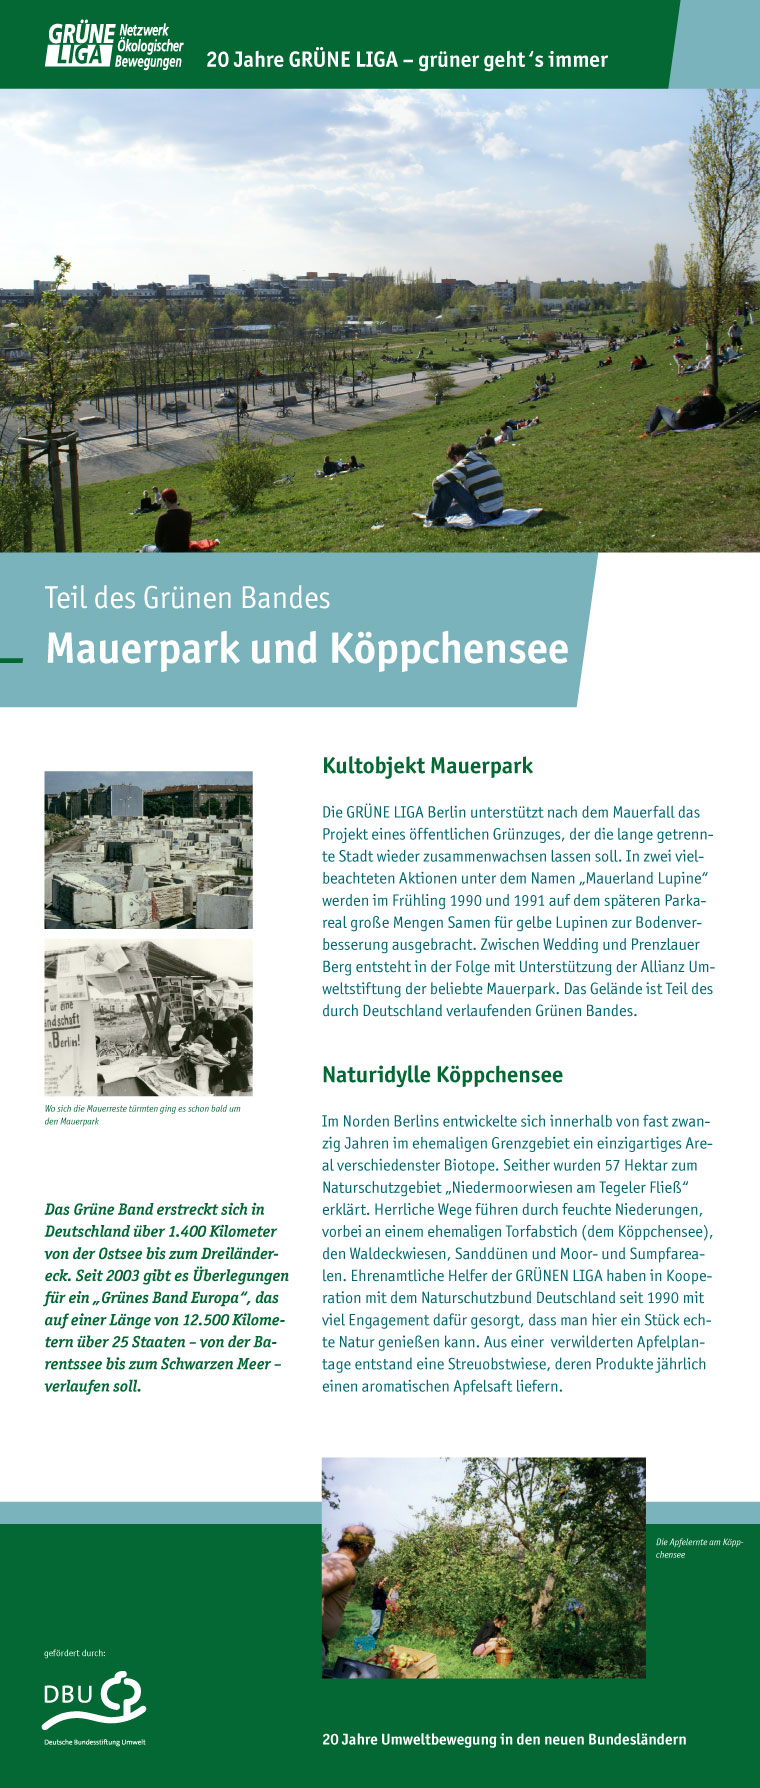 Teil des Grünen Bandes - Mauerpark und Koeppchensee